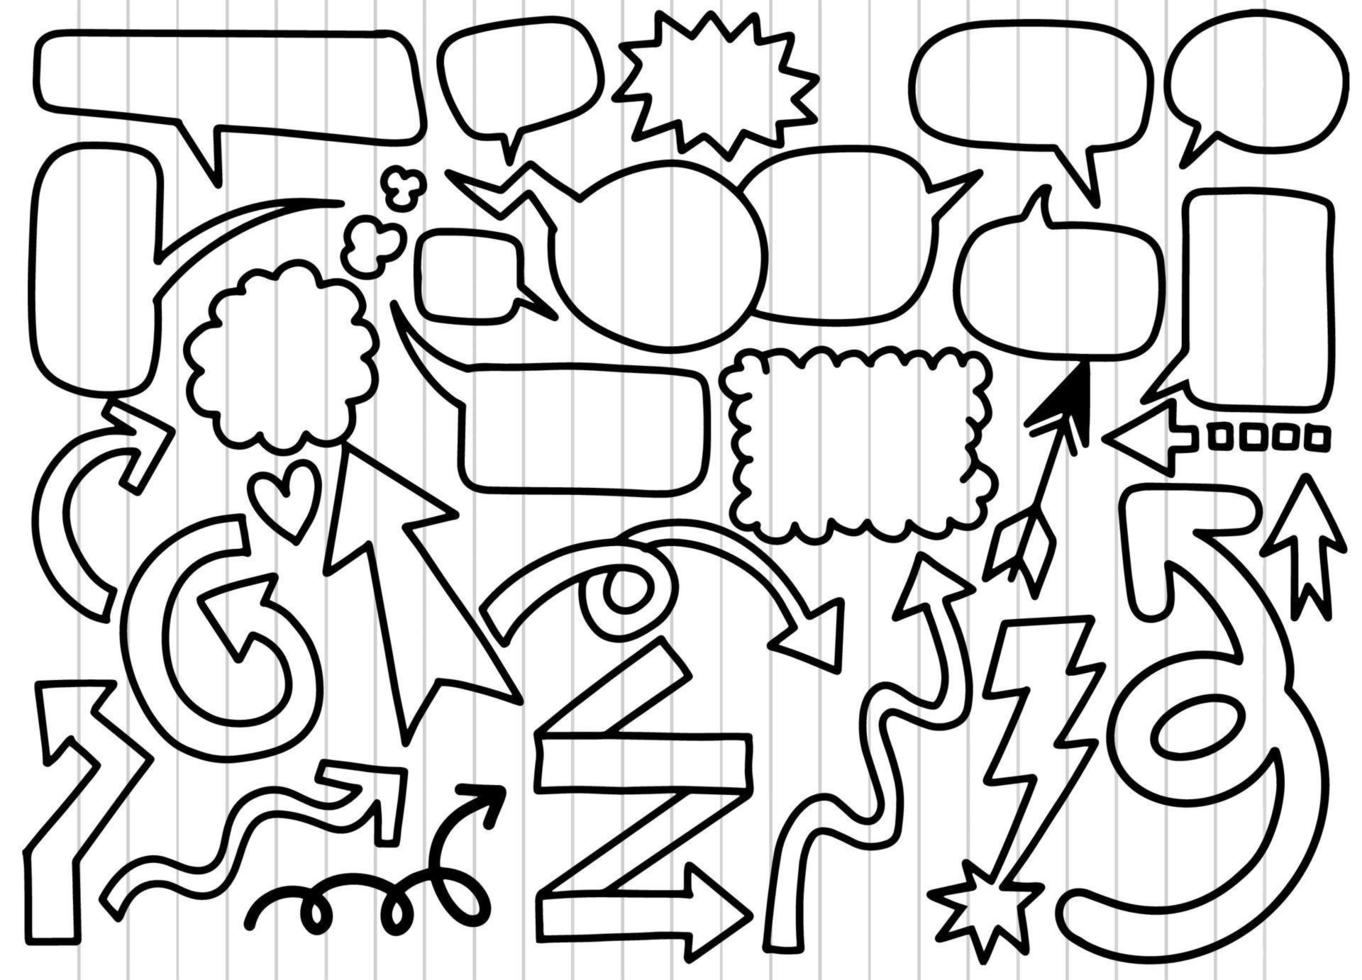 conjunto desenhado à mão de diferentes setas de areia de bolhas de fala, adesivos de bolhas e conjunto de vetores de seta, conjunto retrô de fala em quadrinhos e vetor de desenhos animados de bolhas, cada um em uma camada separada.